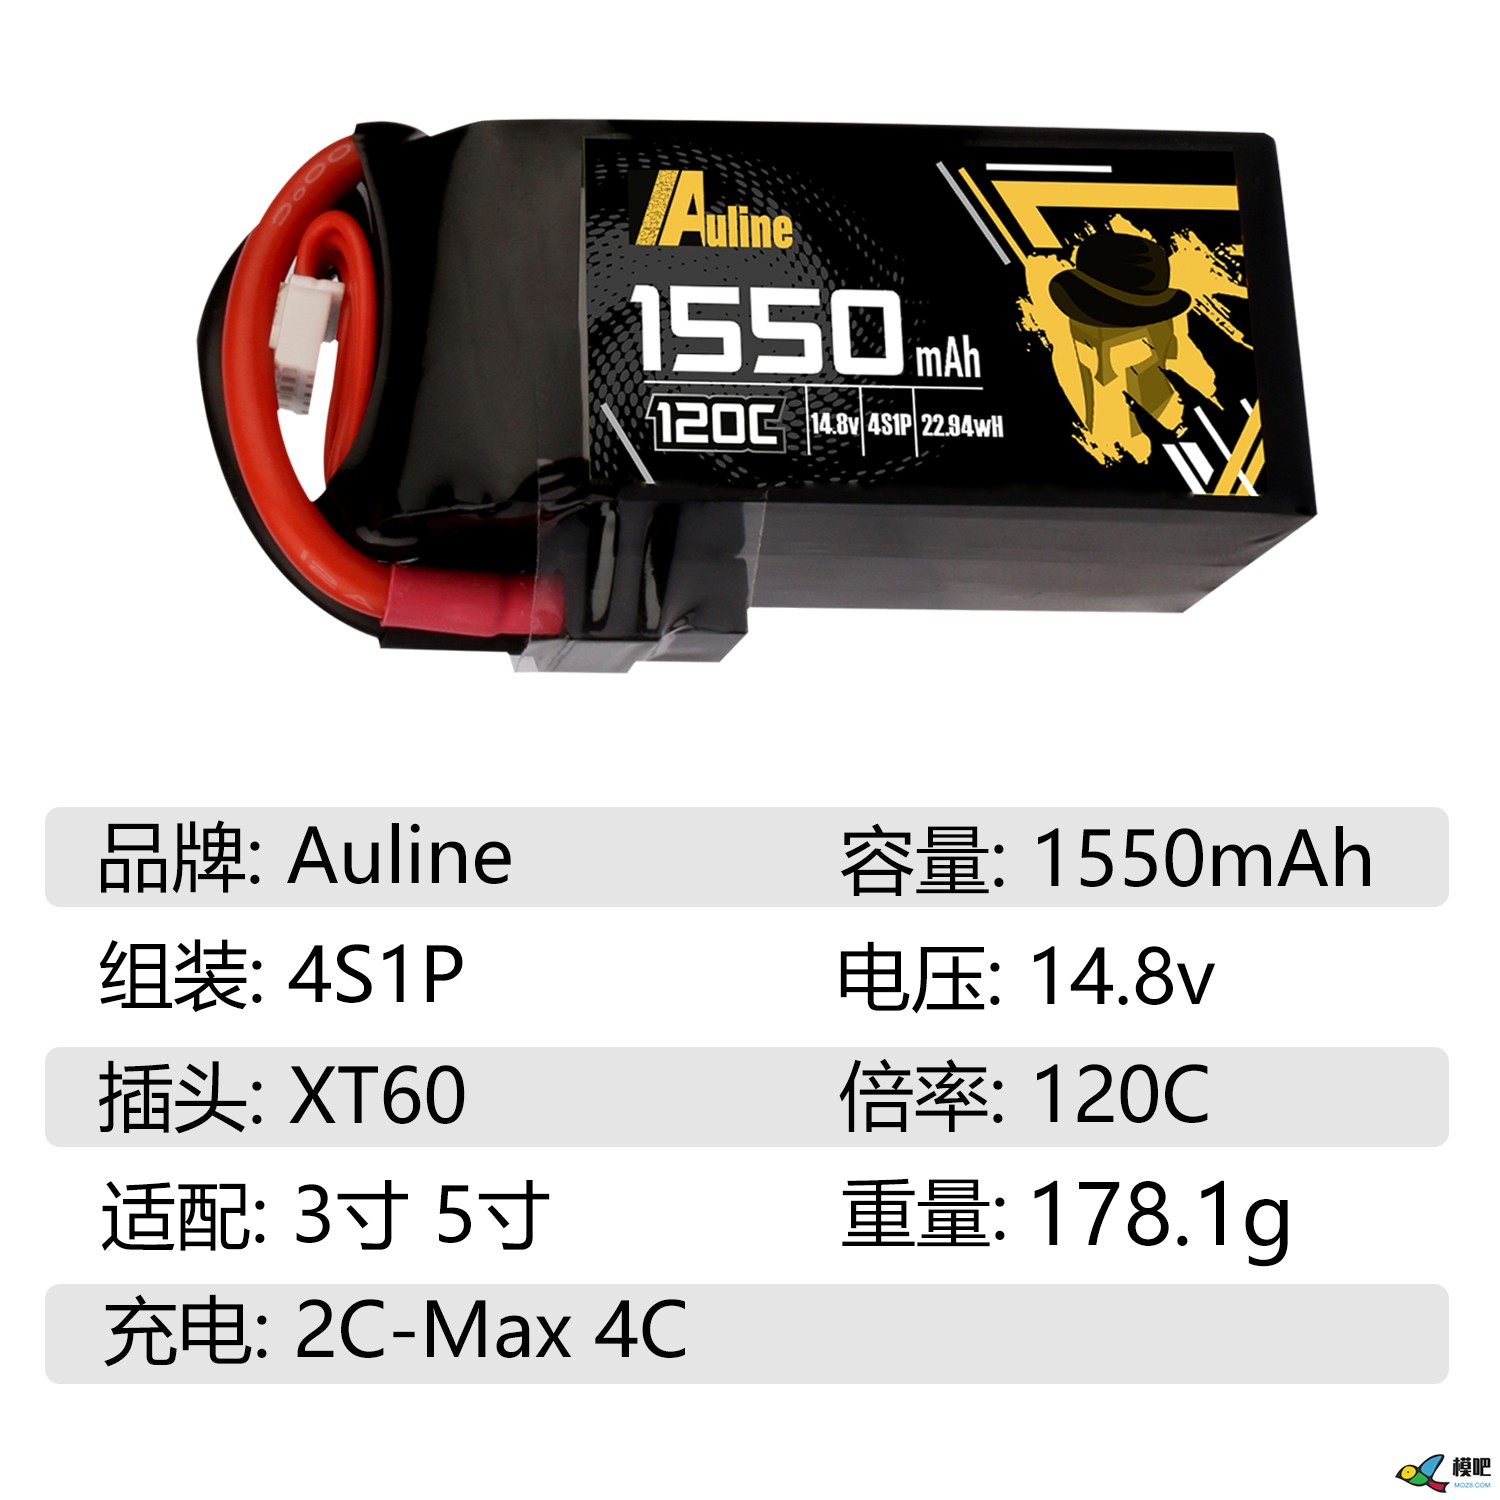 第七期测评活动：Auline品牌1550mAh高倍率锂电池测评邀请 穿越机,模型,固定翼,电池,飞控 作者:小兔子 6301 